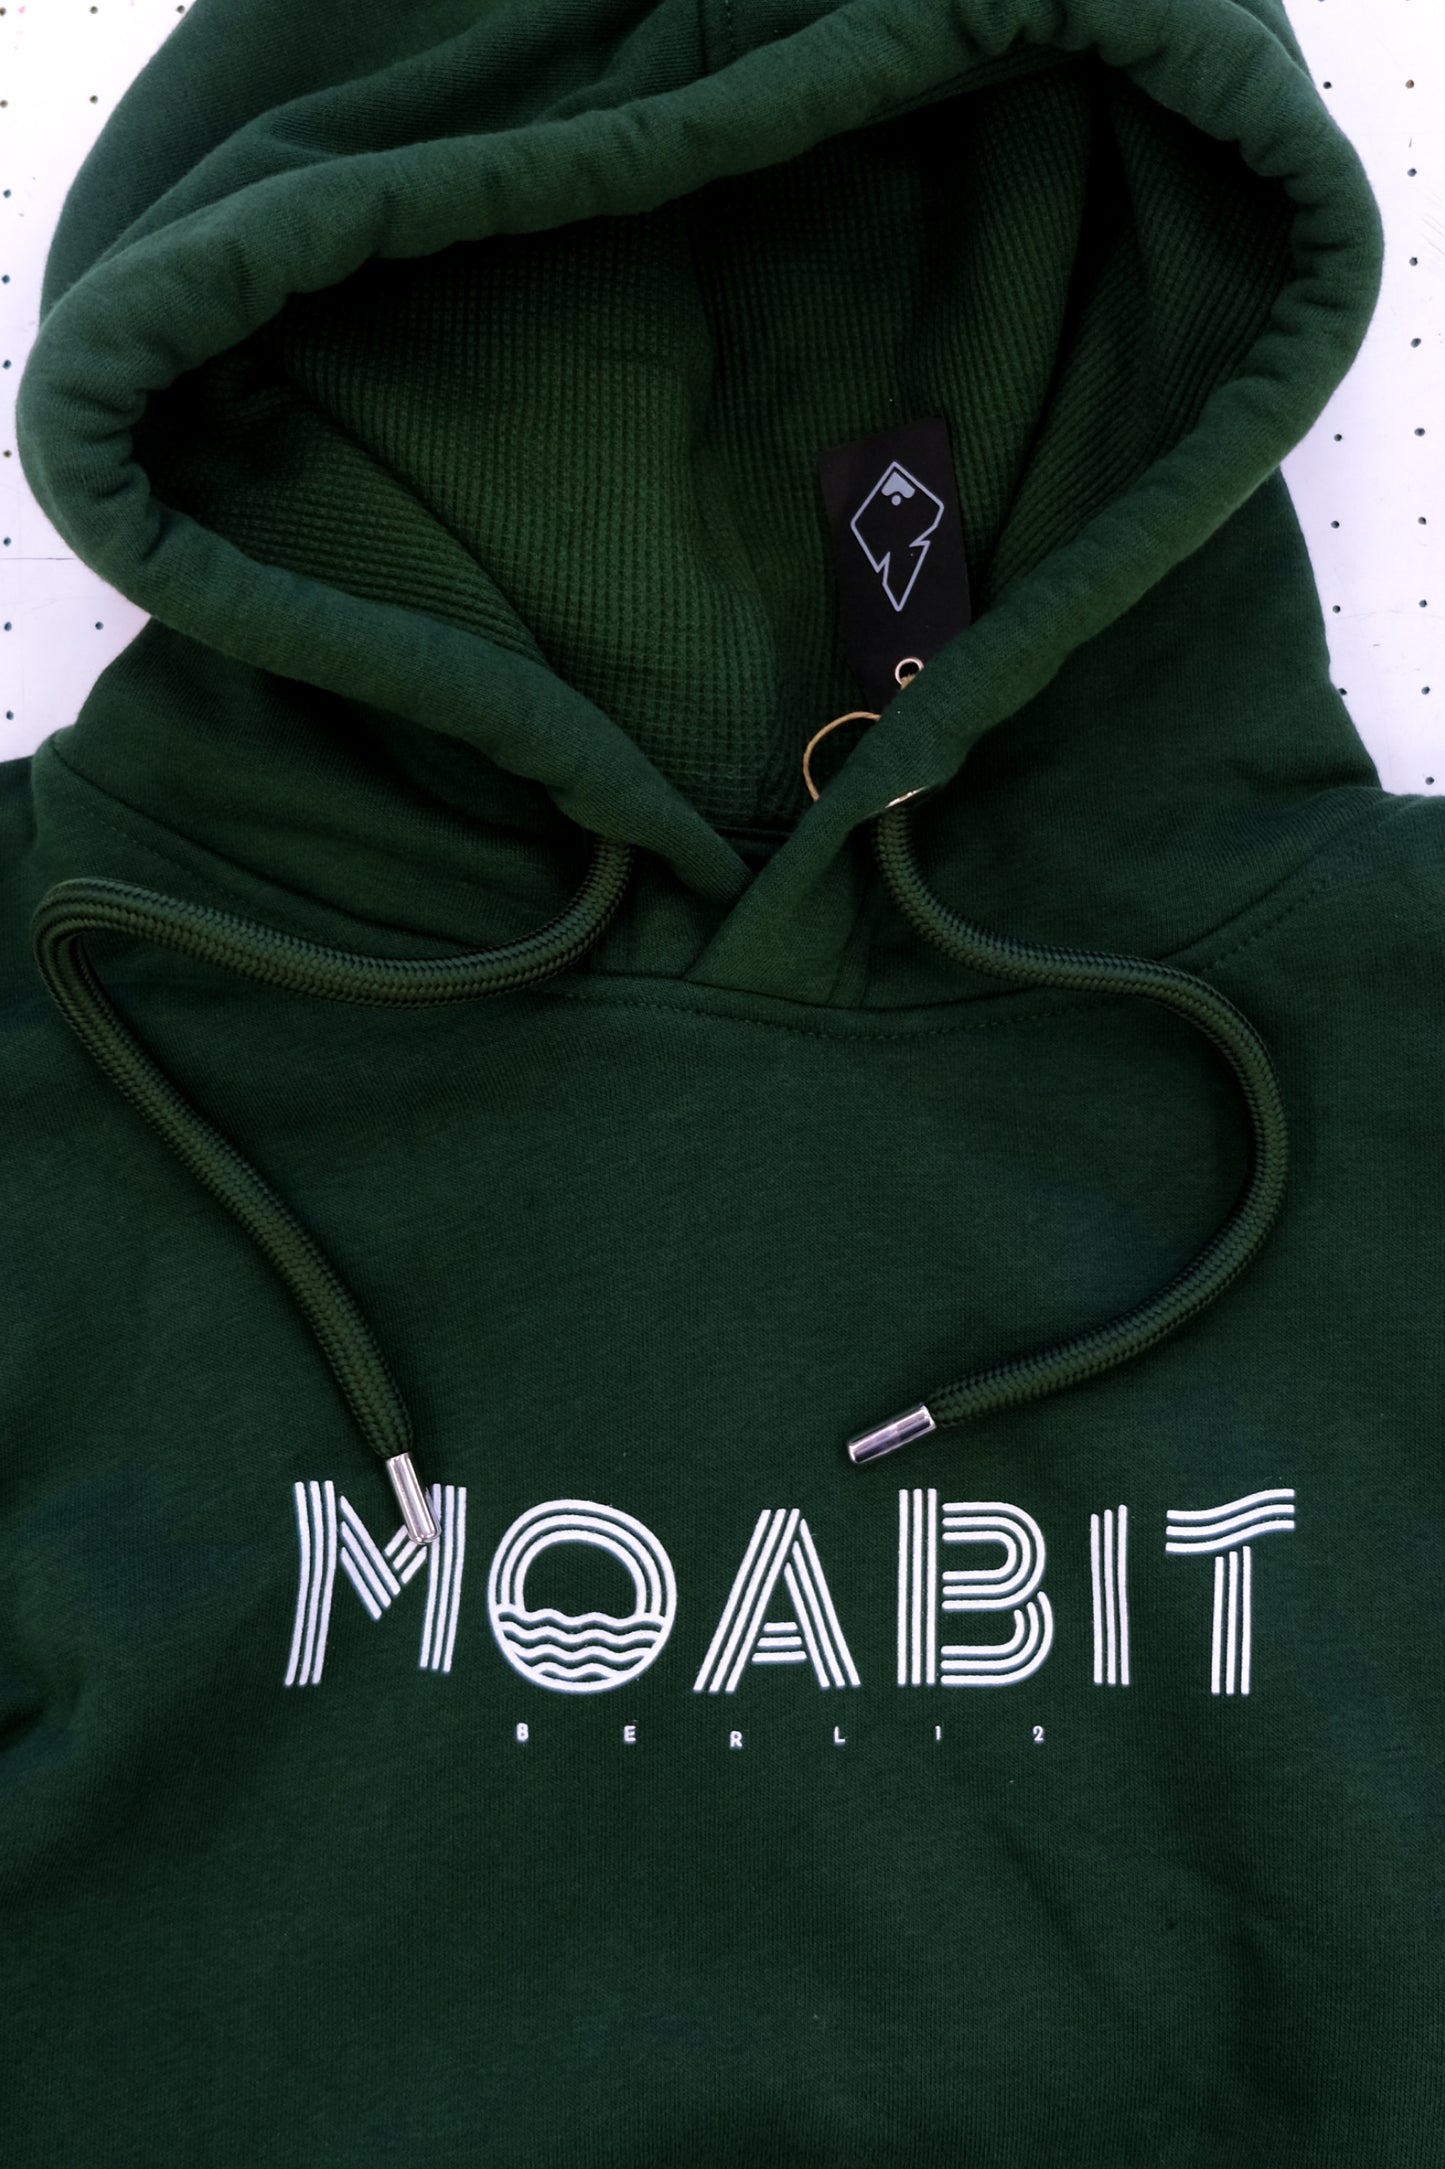 Hoodie - Moabit